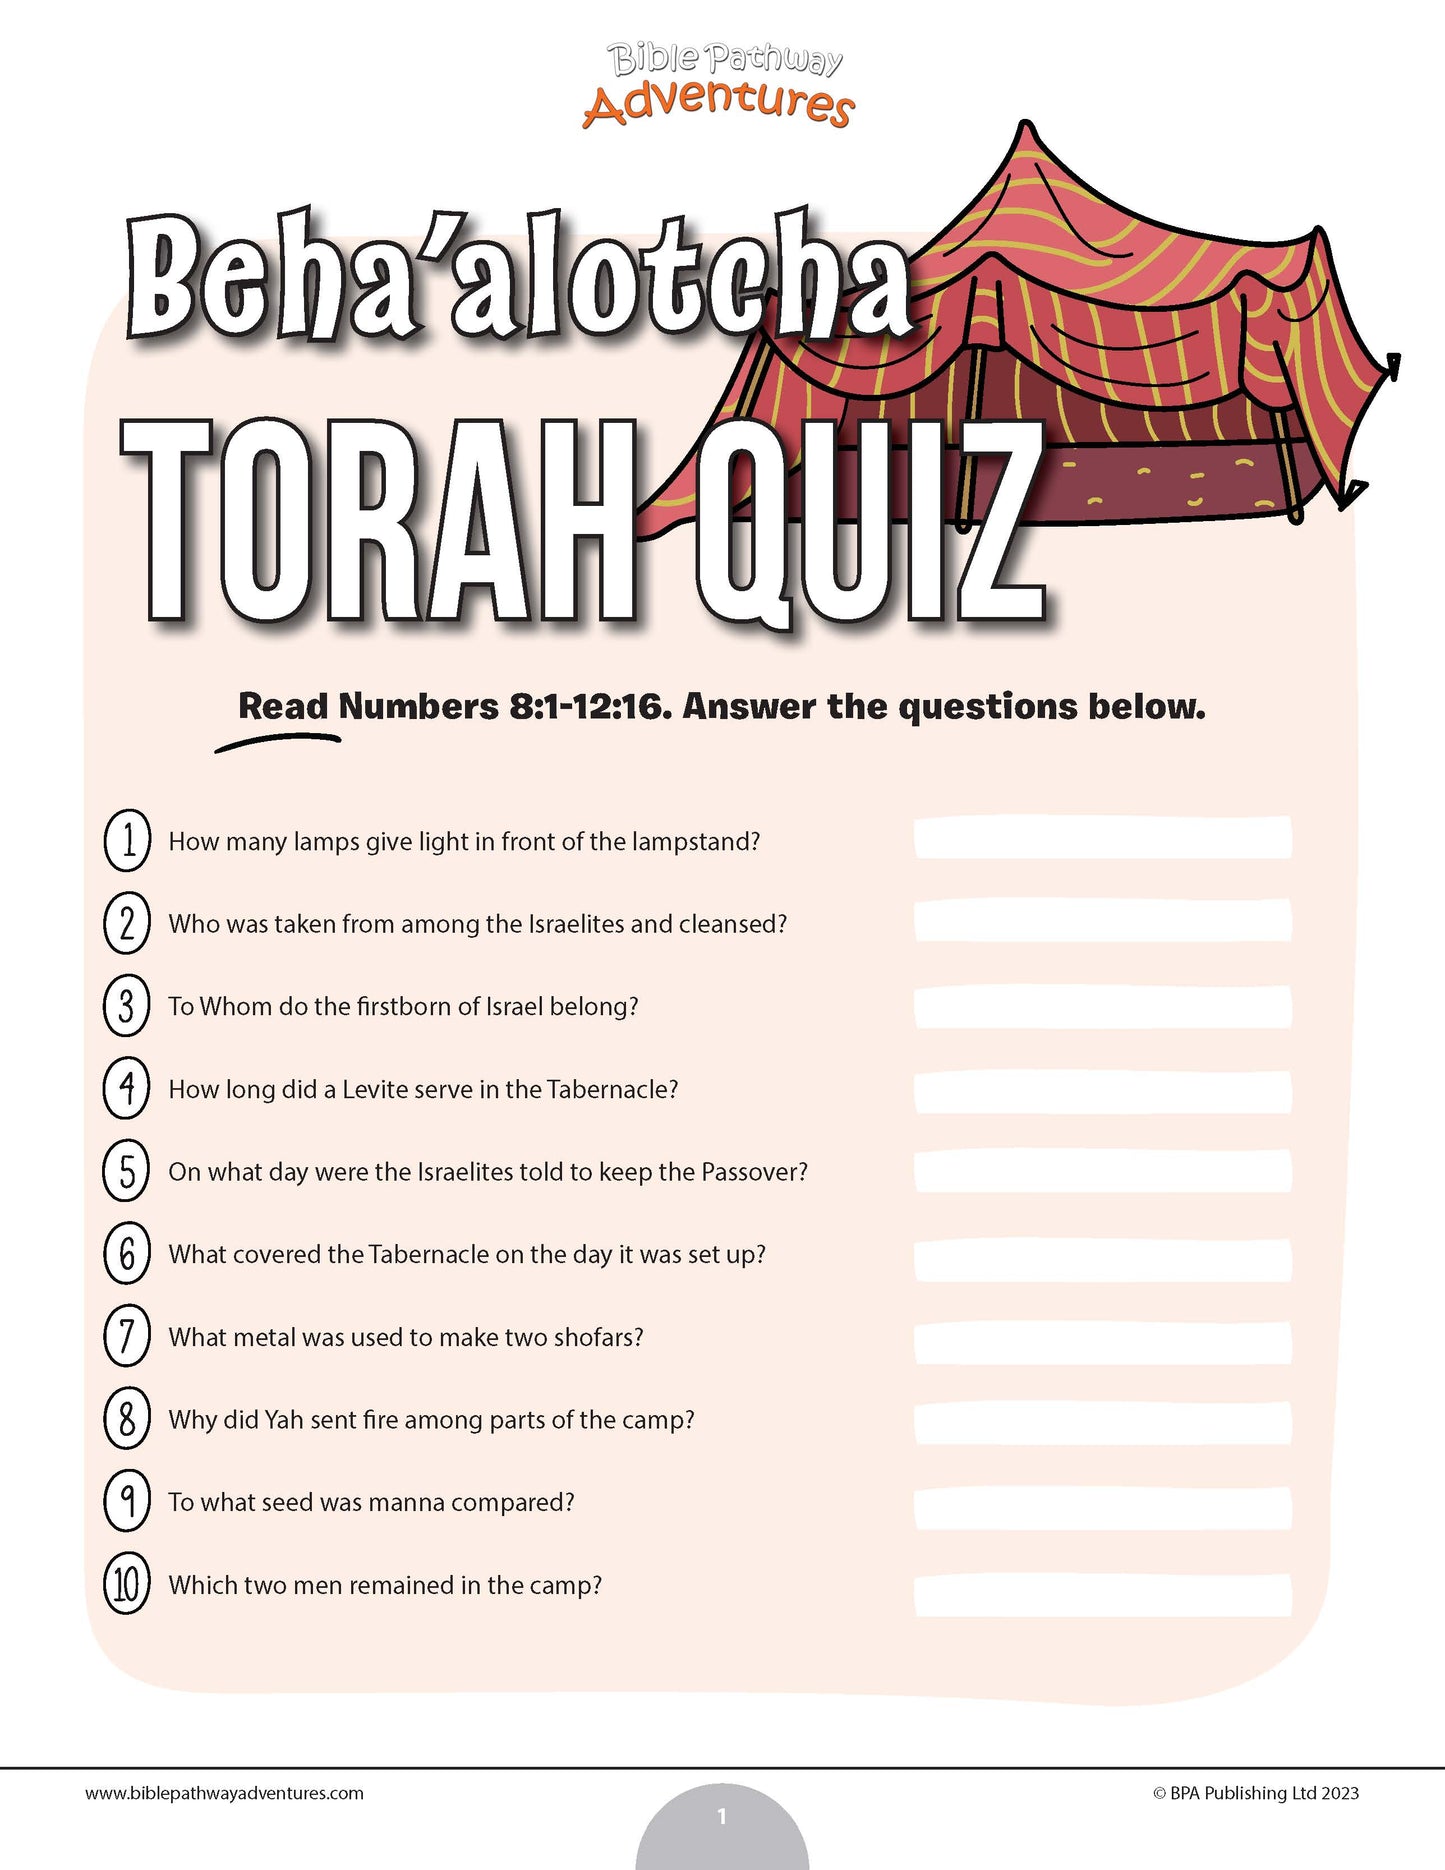 Cuestionario de Beha'alotja Torá